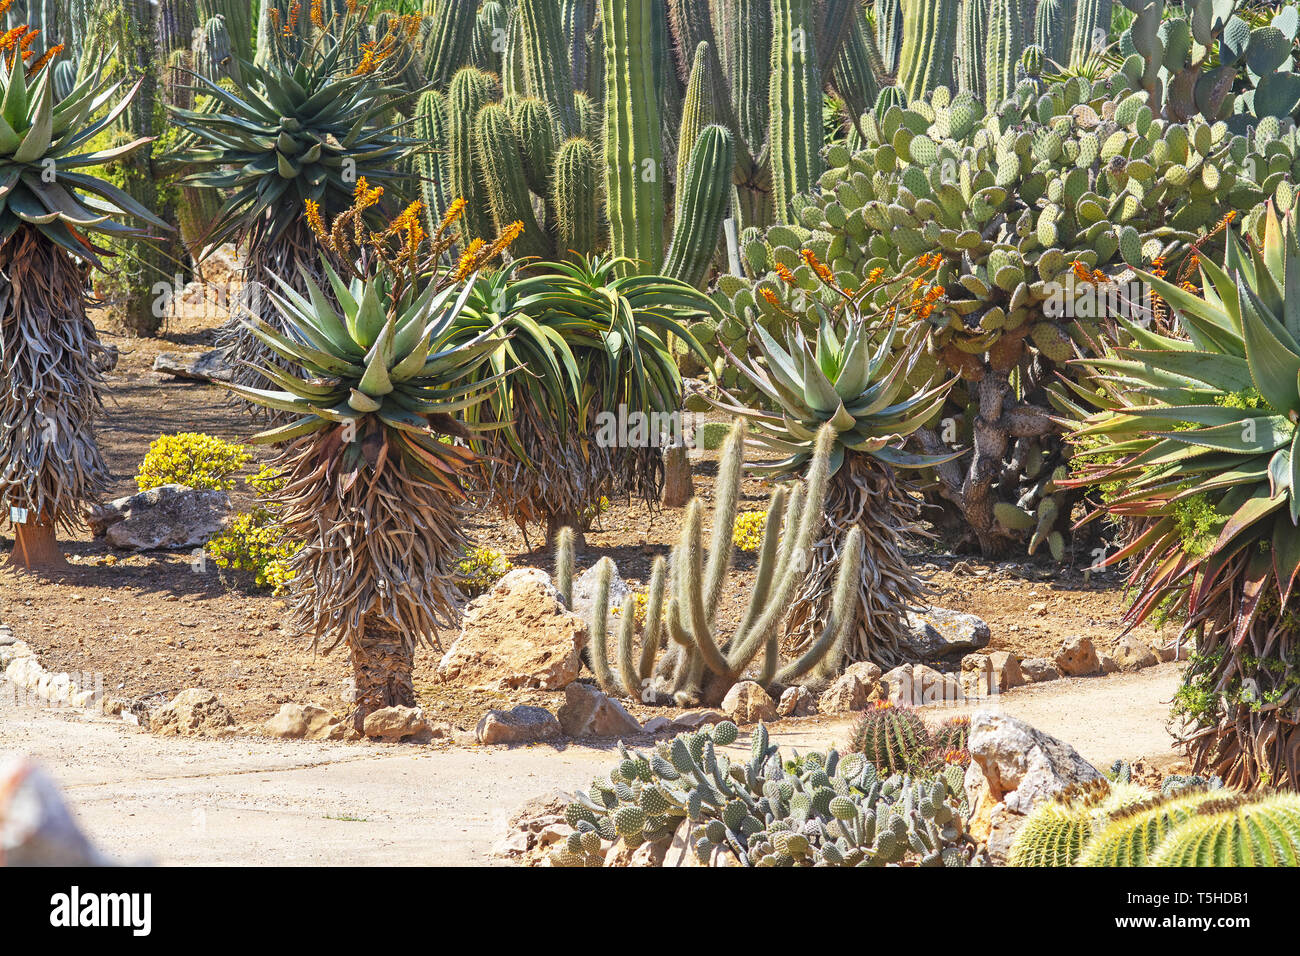 SES SALINES, MALLORCA, SPAIN - APRIL 15, 2019: Cactus and succulent plants in arid landscape park Botanicactus on April 15, 2019 in Ses Salines, Mallo Stock Photo